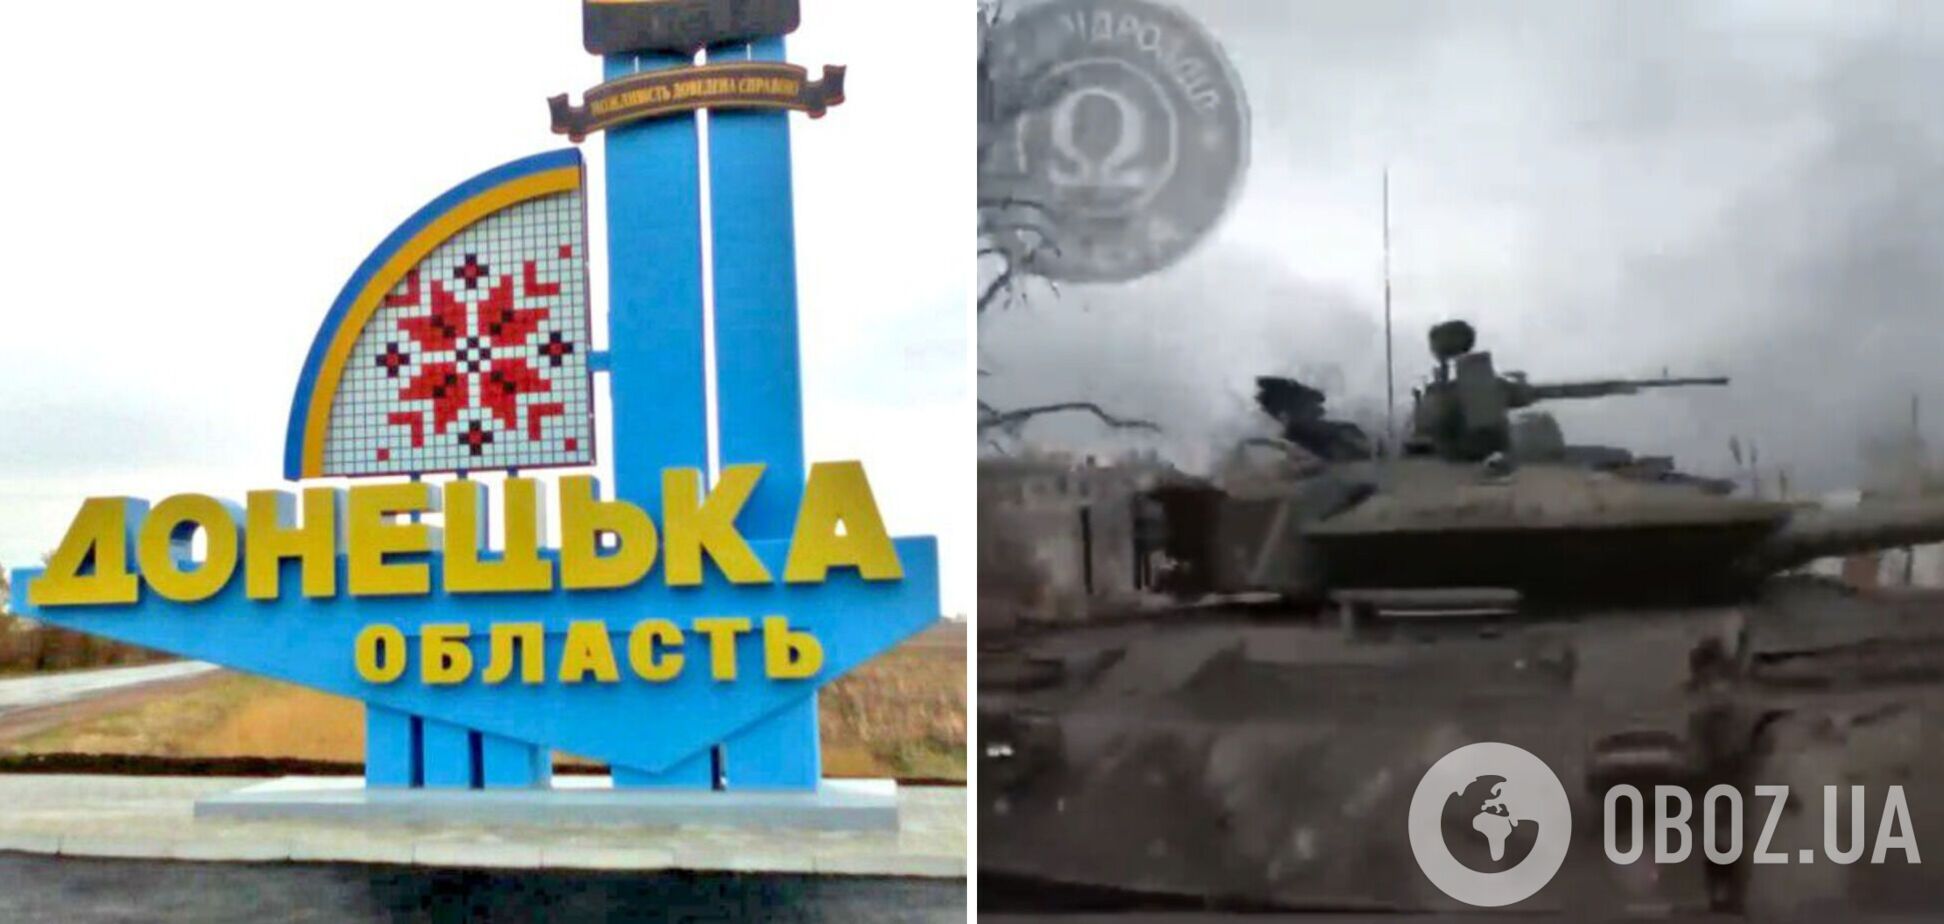 Спецназовцы Нацгвардии затрофеили новенький танк оккупантов в окрестностях Угледара. Видео